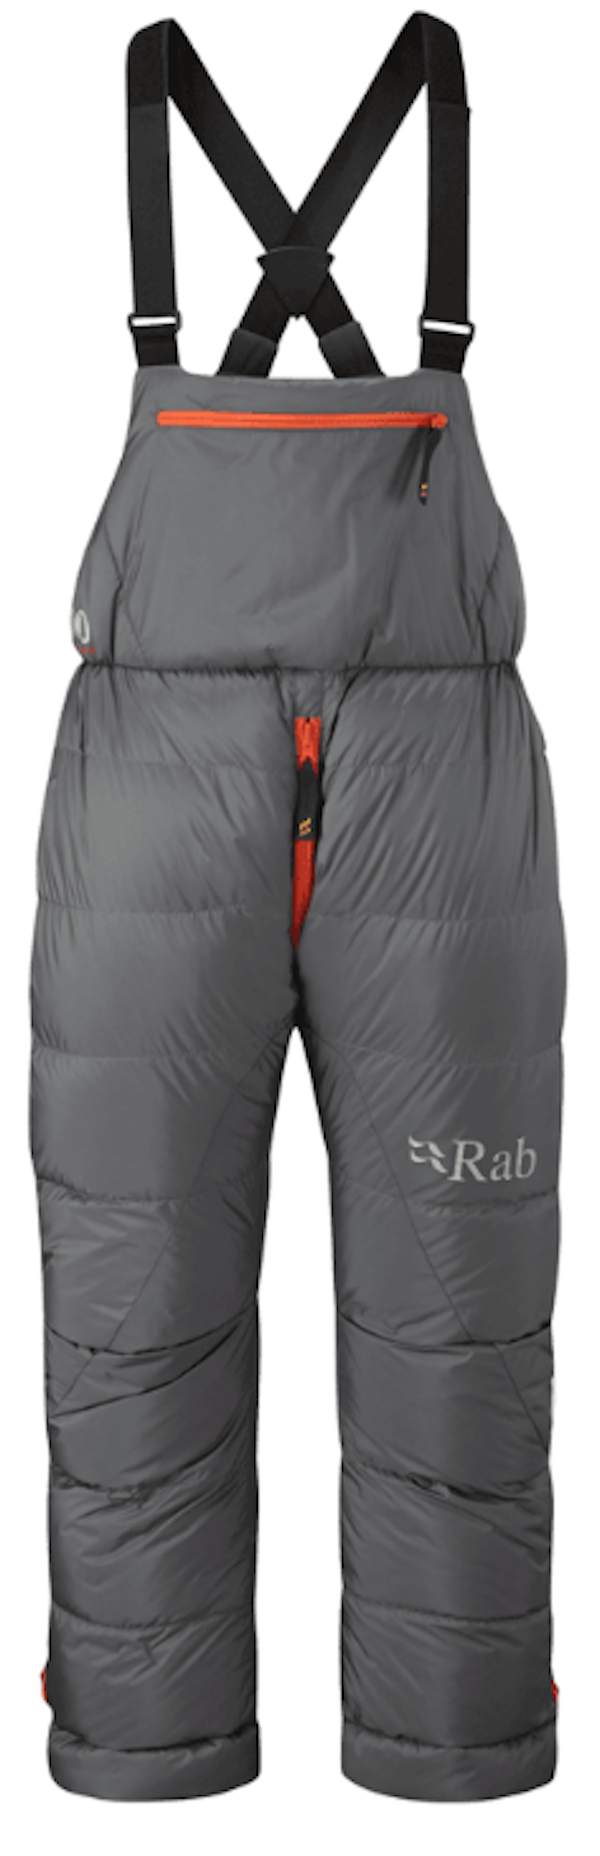 Rab - Expedition 8000 - Pantaloni in piumino